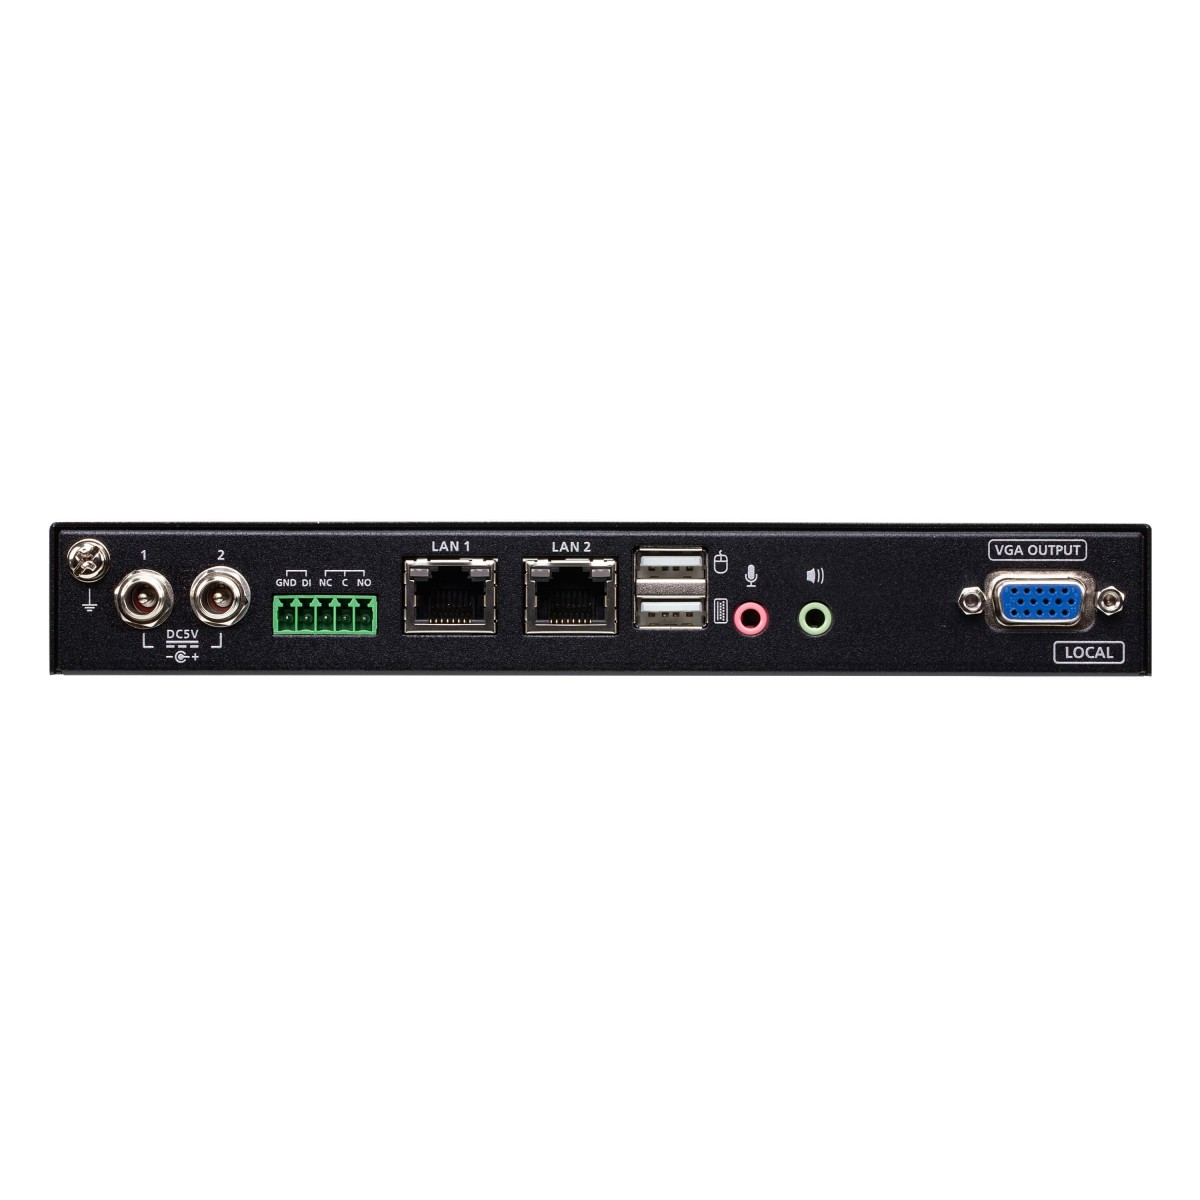 ATEN CN9000 - 1920 x 1200 pixels - Ethernet LAN - Full HD - 7.46 W - Black